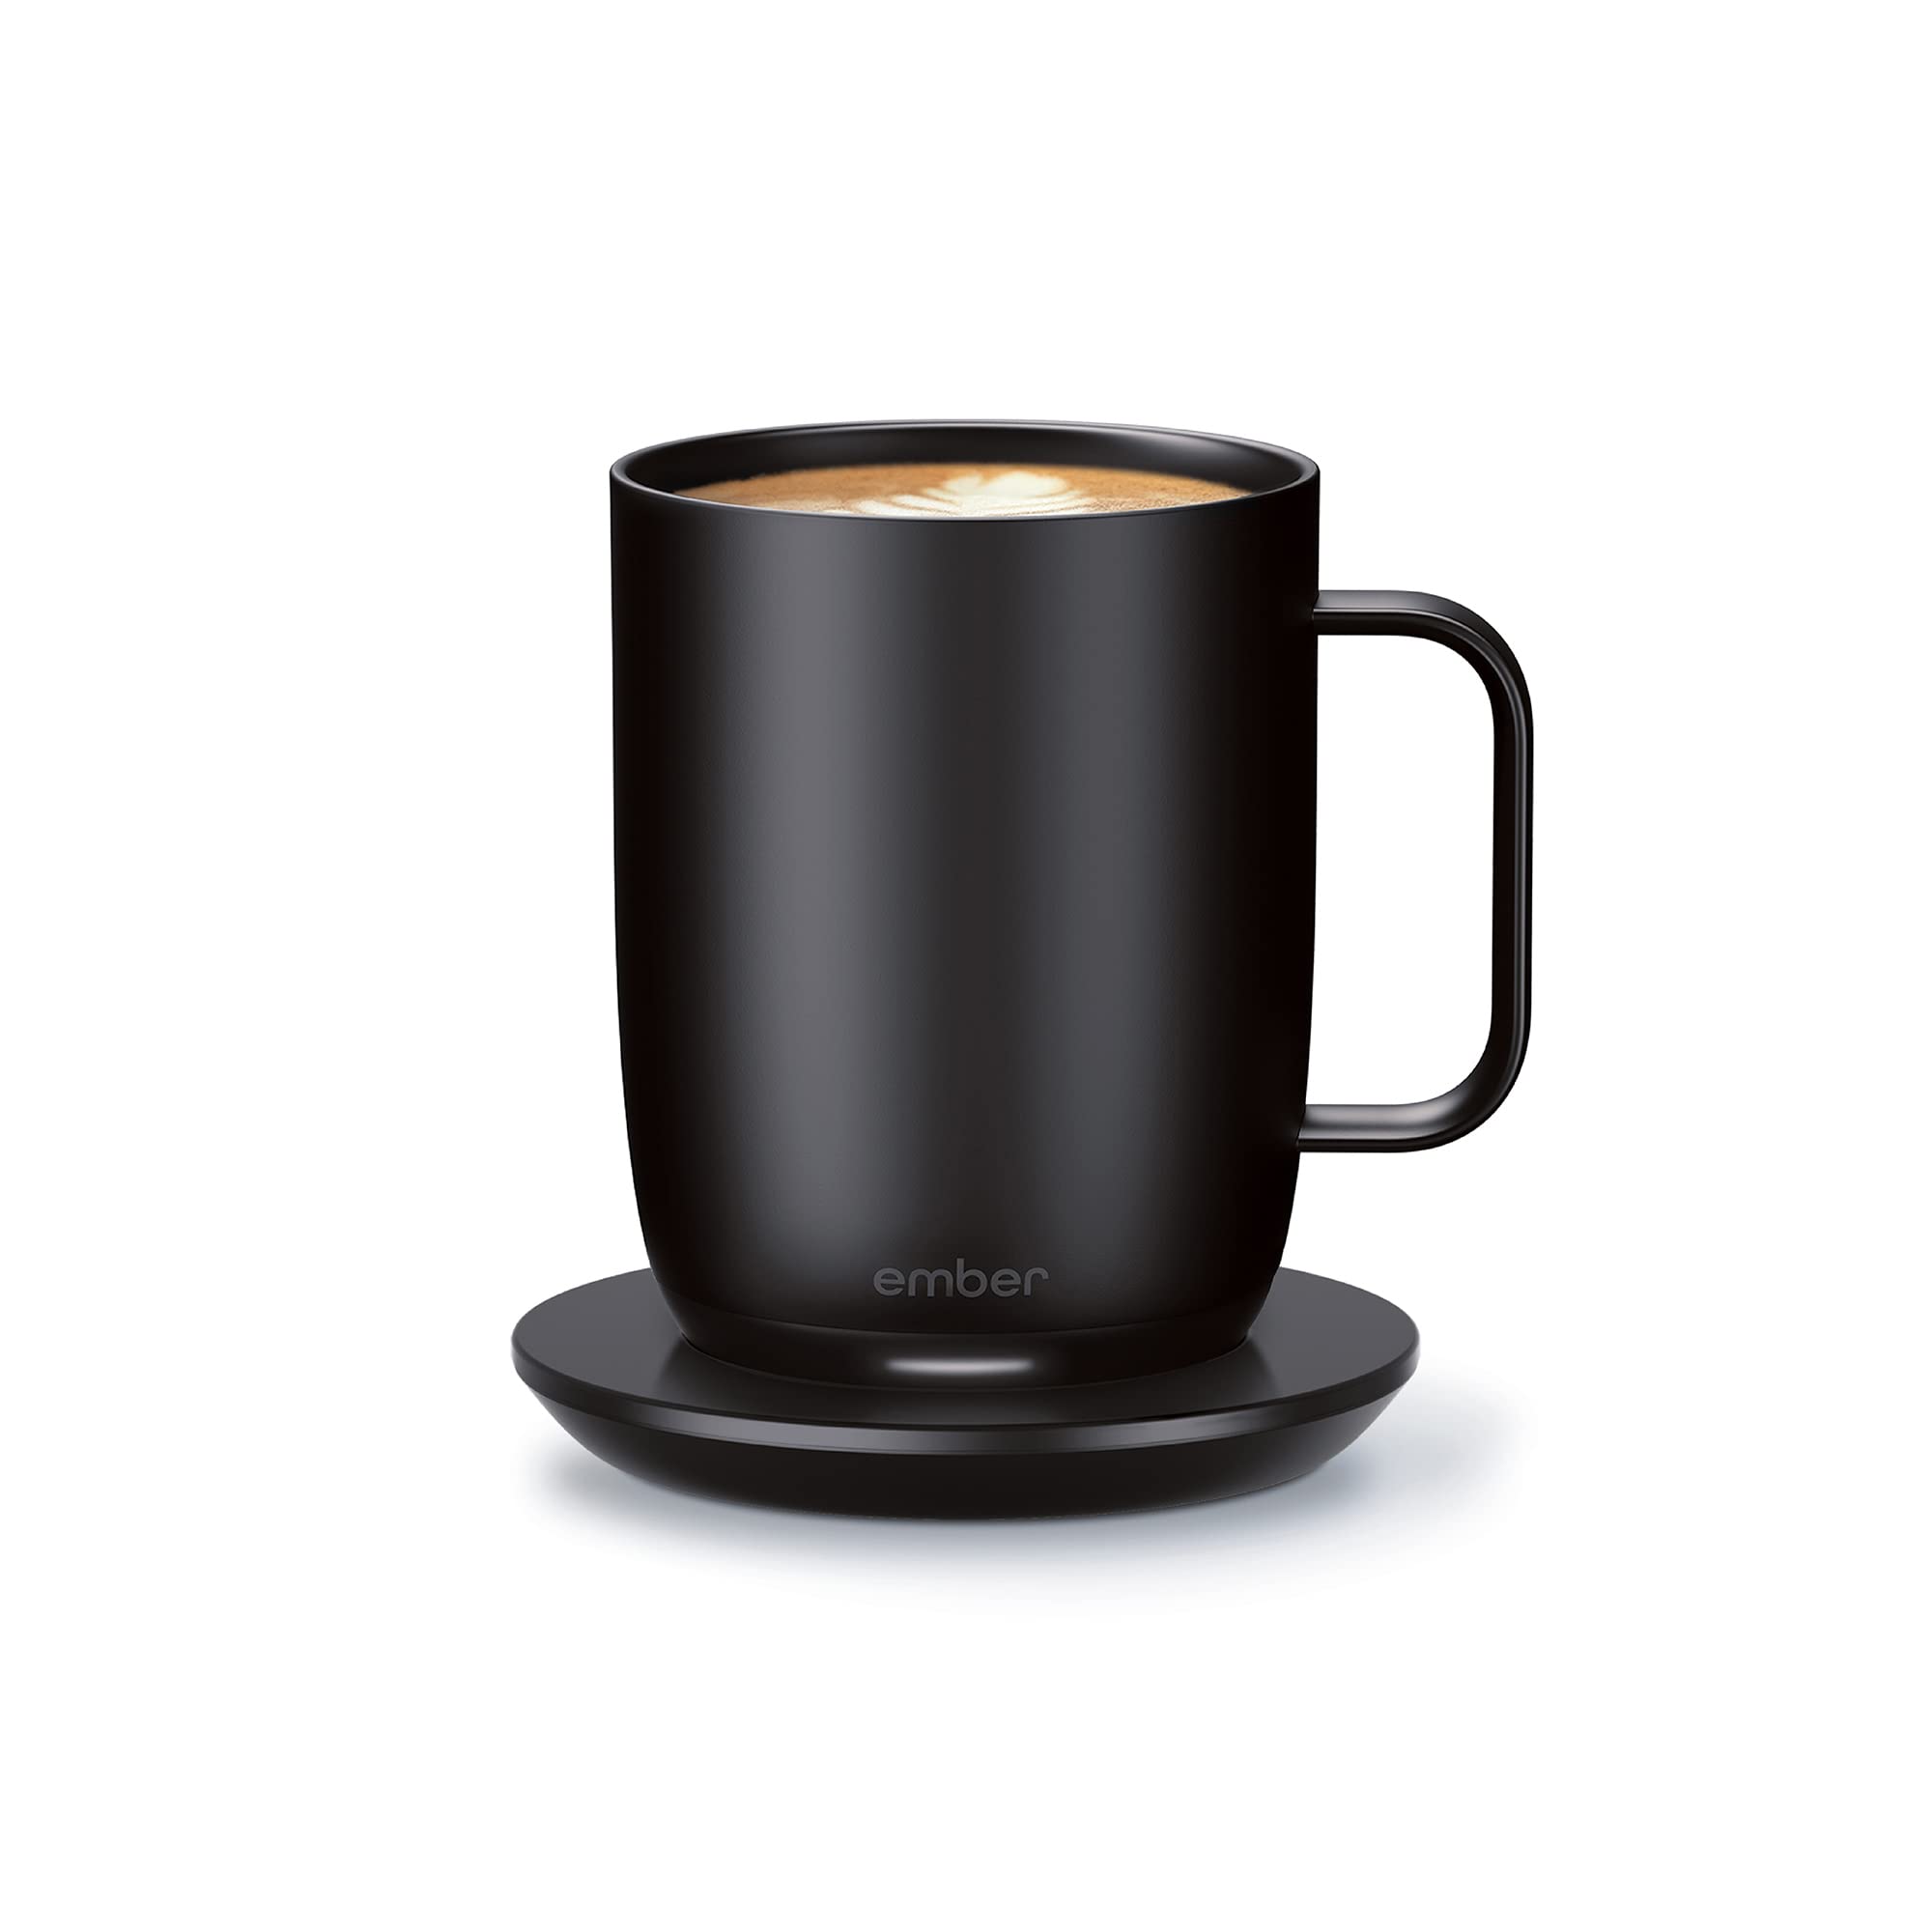 Ember 全新温控智能马克杯 2，10 盎司，1.5 小时电池寿命 - 应用程序控制加热咖啡杯 - 改进设计...